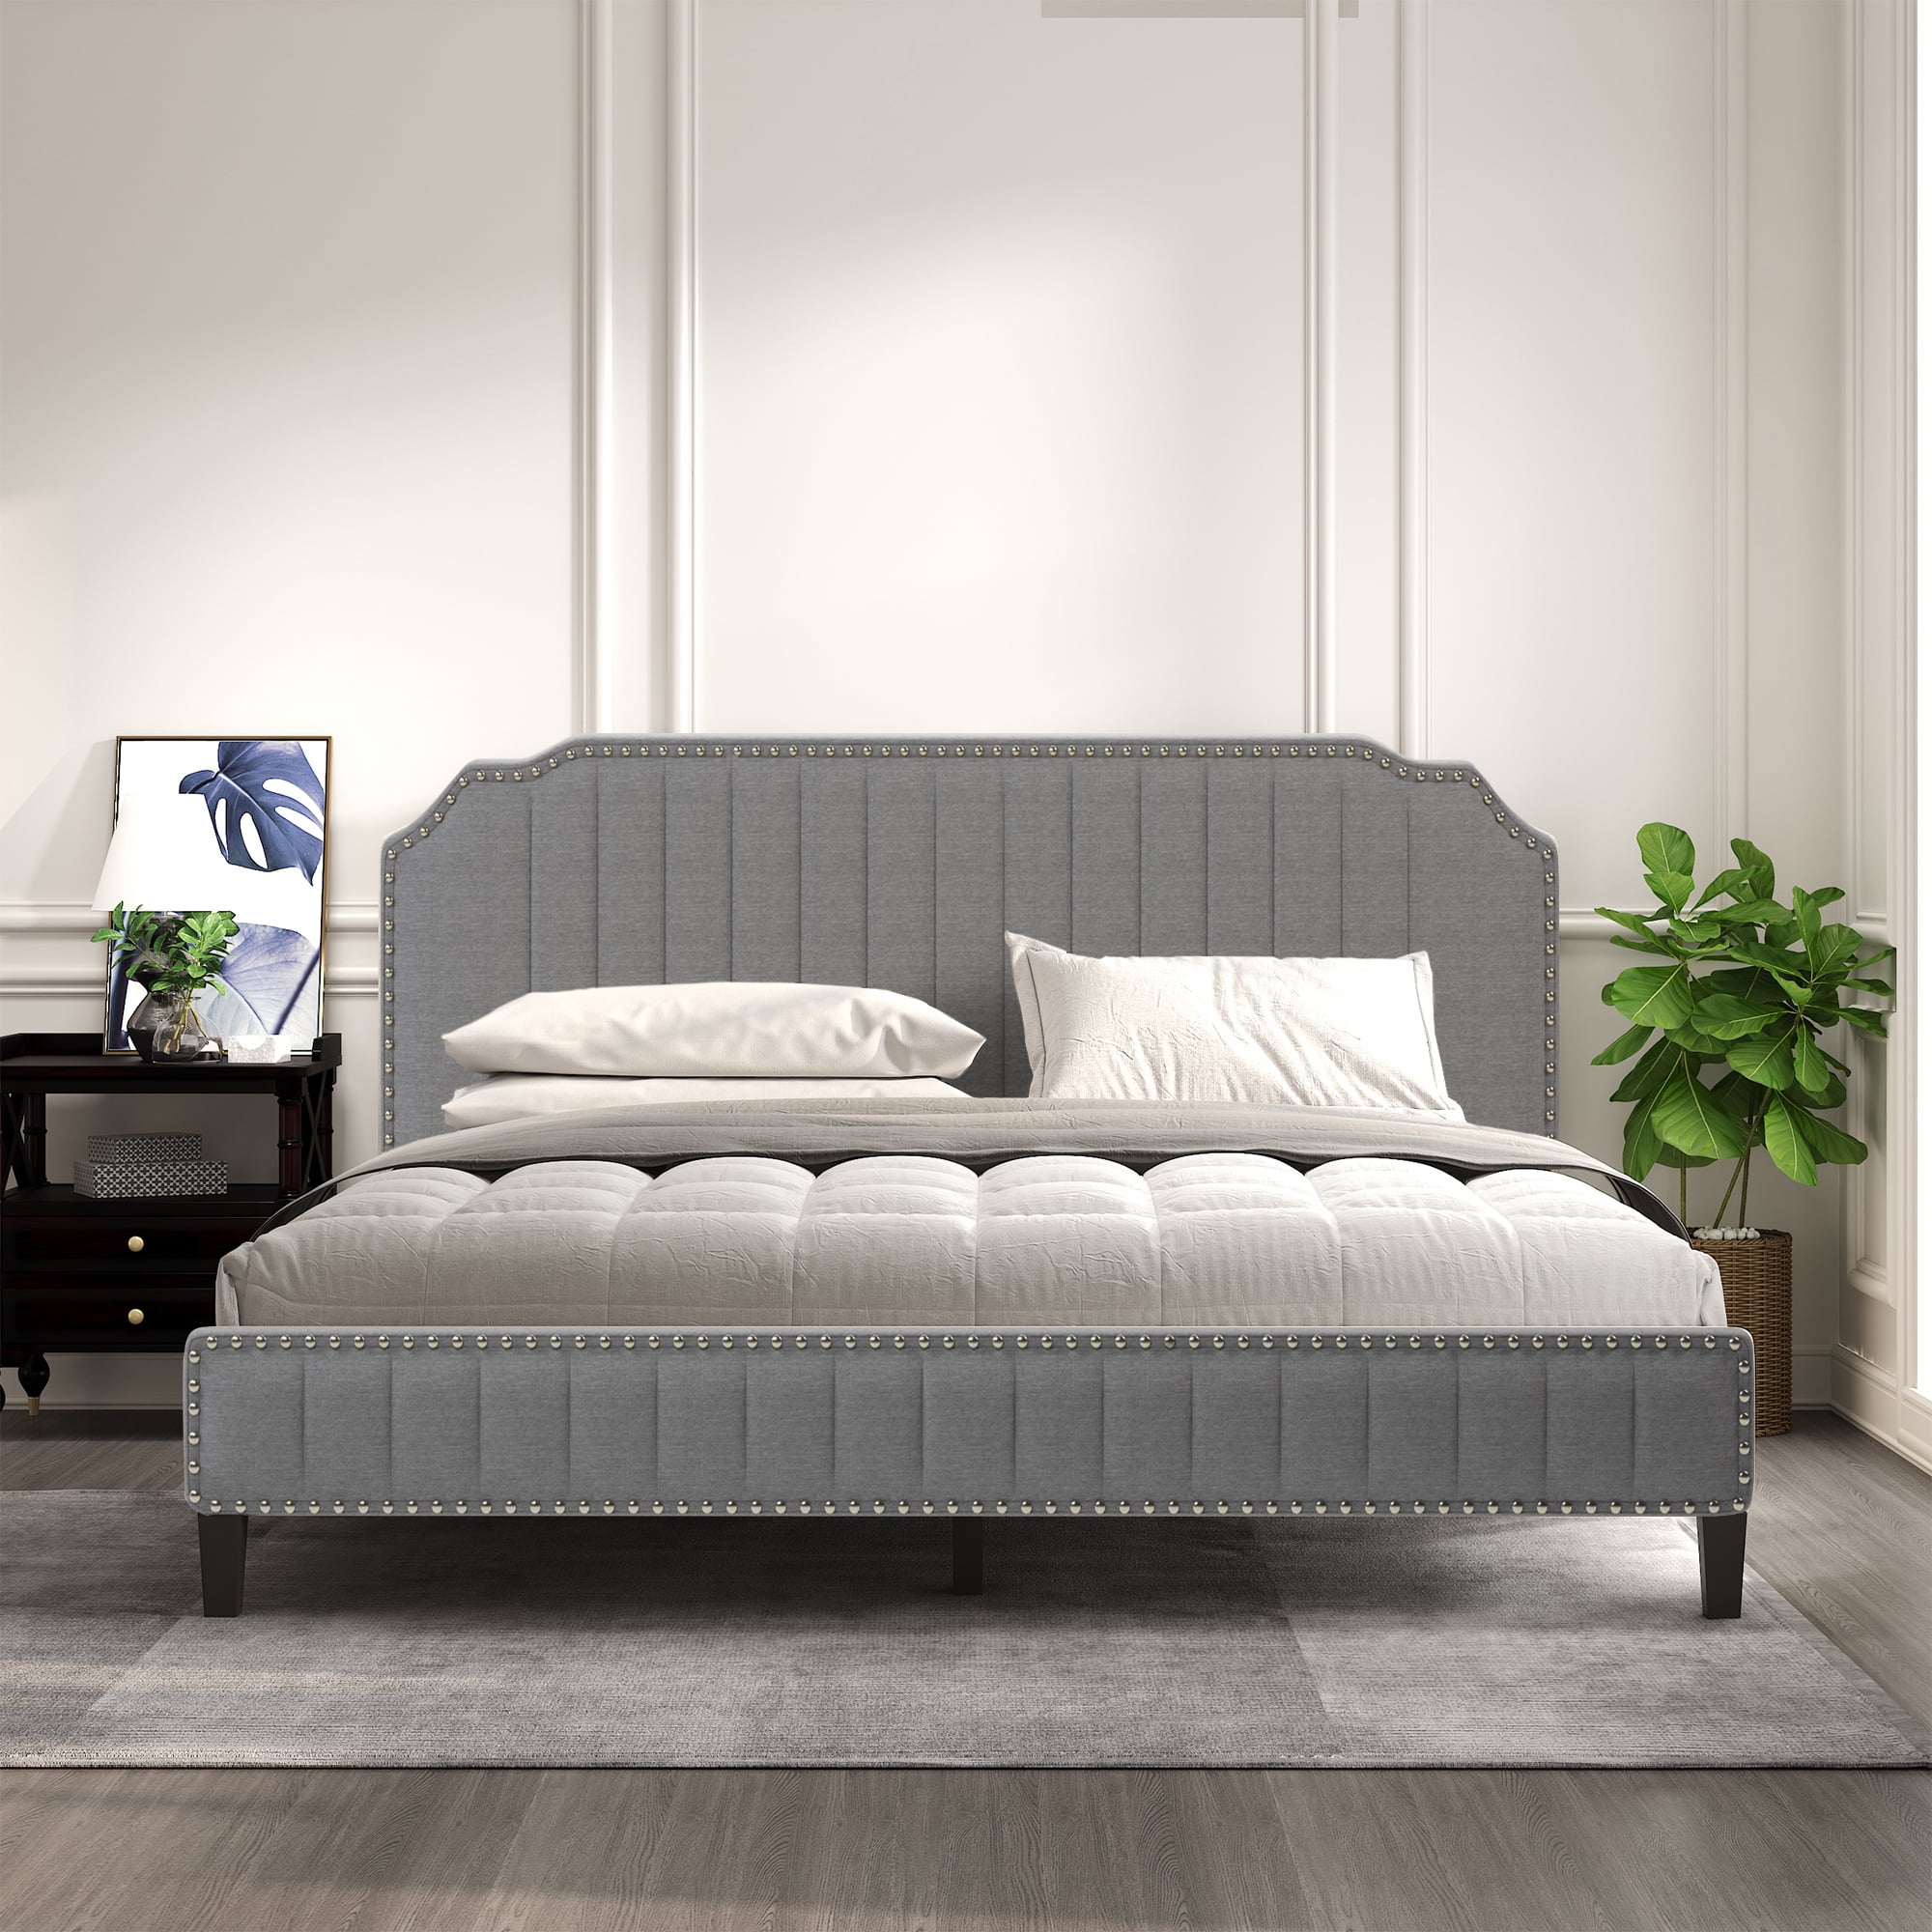 King Platform Bed Frame Modern Linen, Solid Wood King Size Bed Frame With Headboard